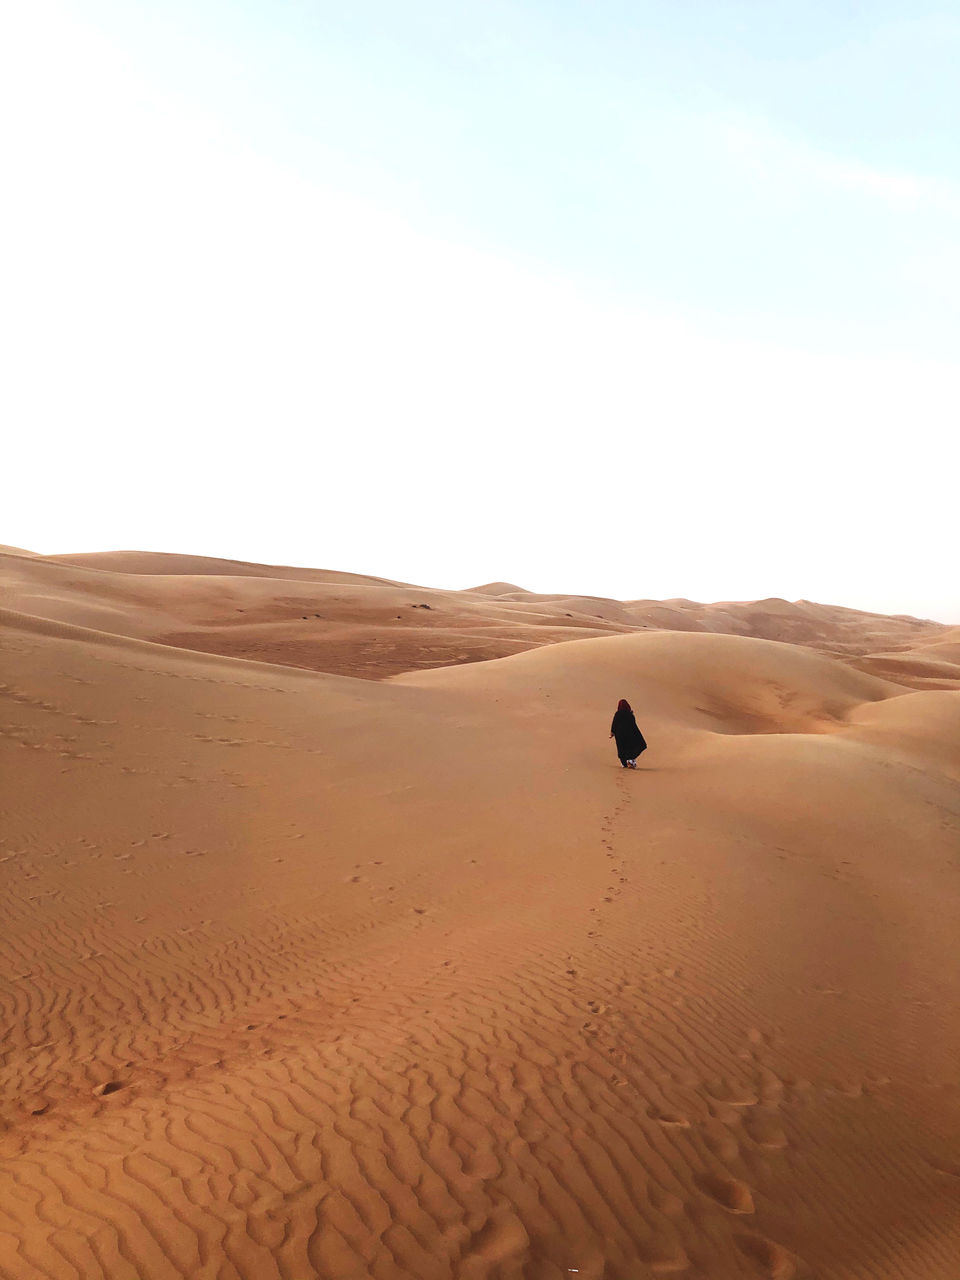 SAND DUNES IN DESERT AGAINST SKY